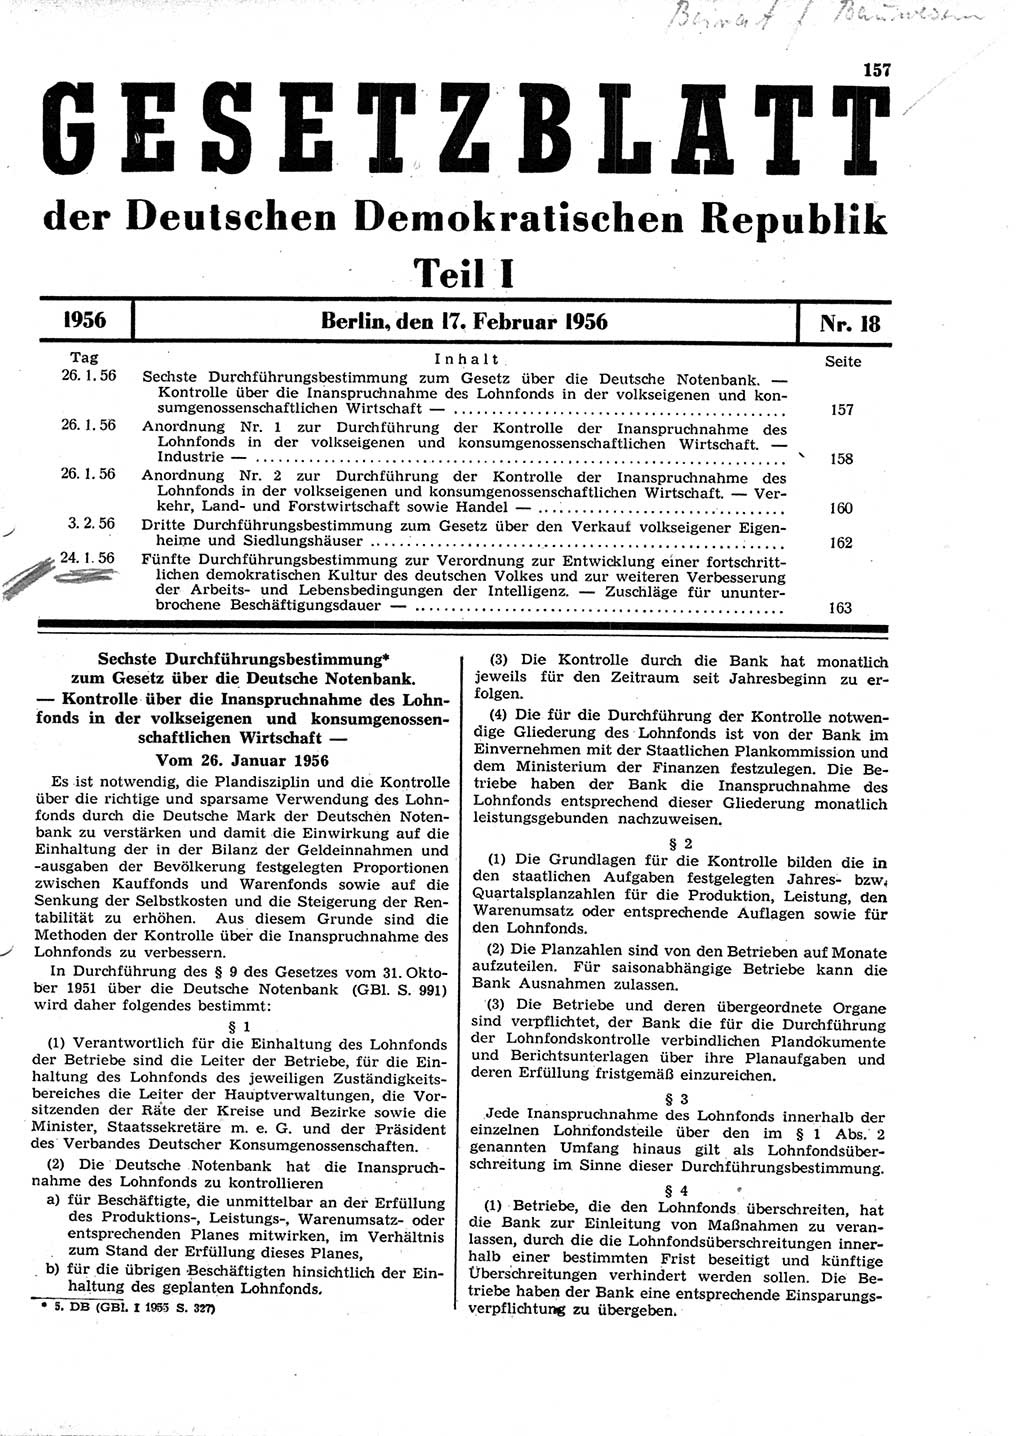 Gesetzblatt (GBl.) der Deutschen Demokratischen Republik (DDR) Teil Ⅰ 1956, Seite 157 (GBl. DDR Ⅰ 1956, S. 157)